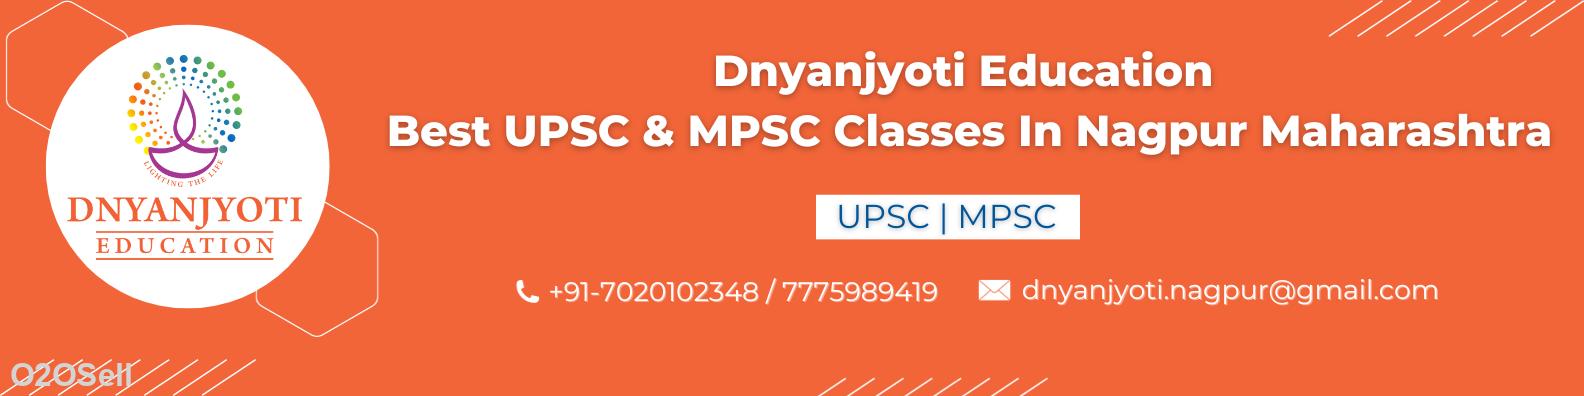 Dnyanjyoti Education Best UPSC & MPSC Classes In Nagpur Maharashtra - Cover Image